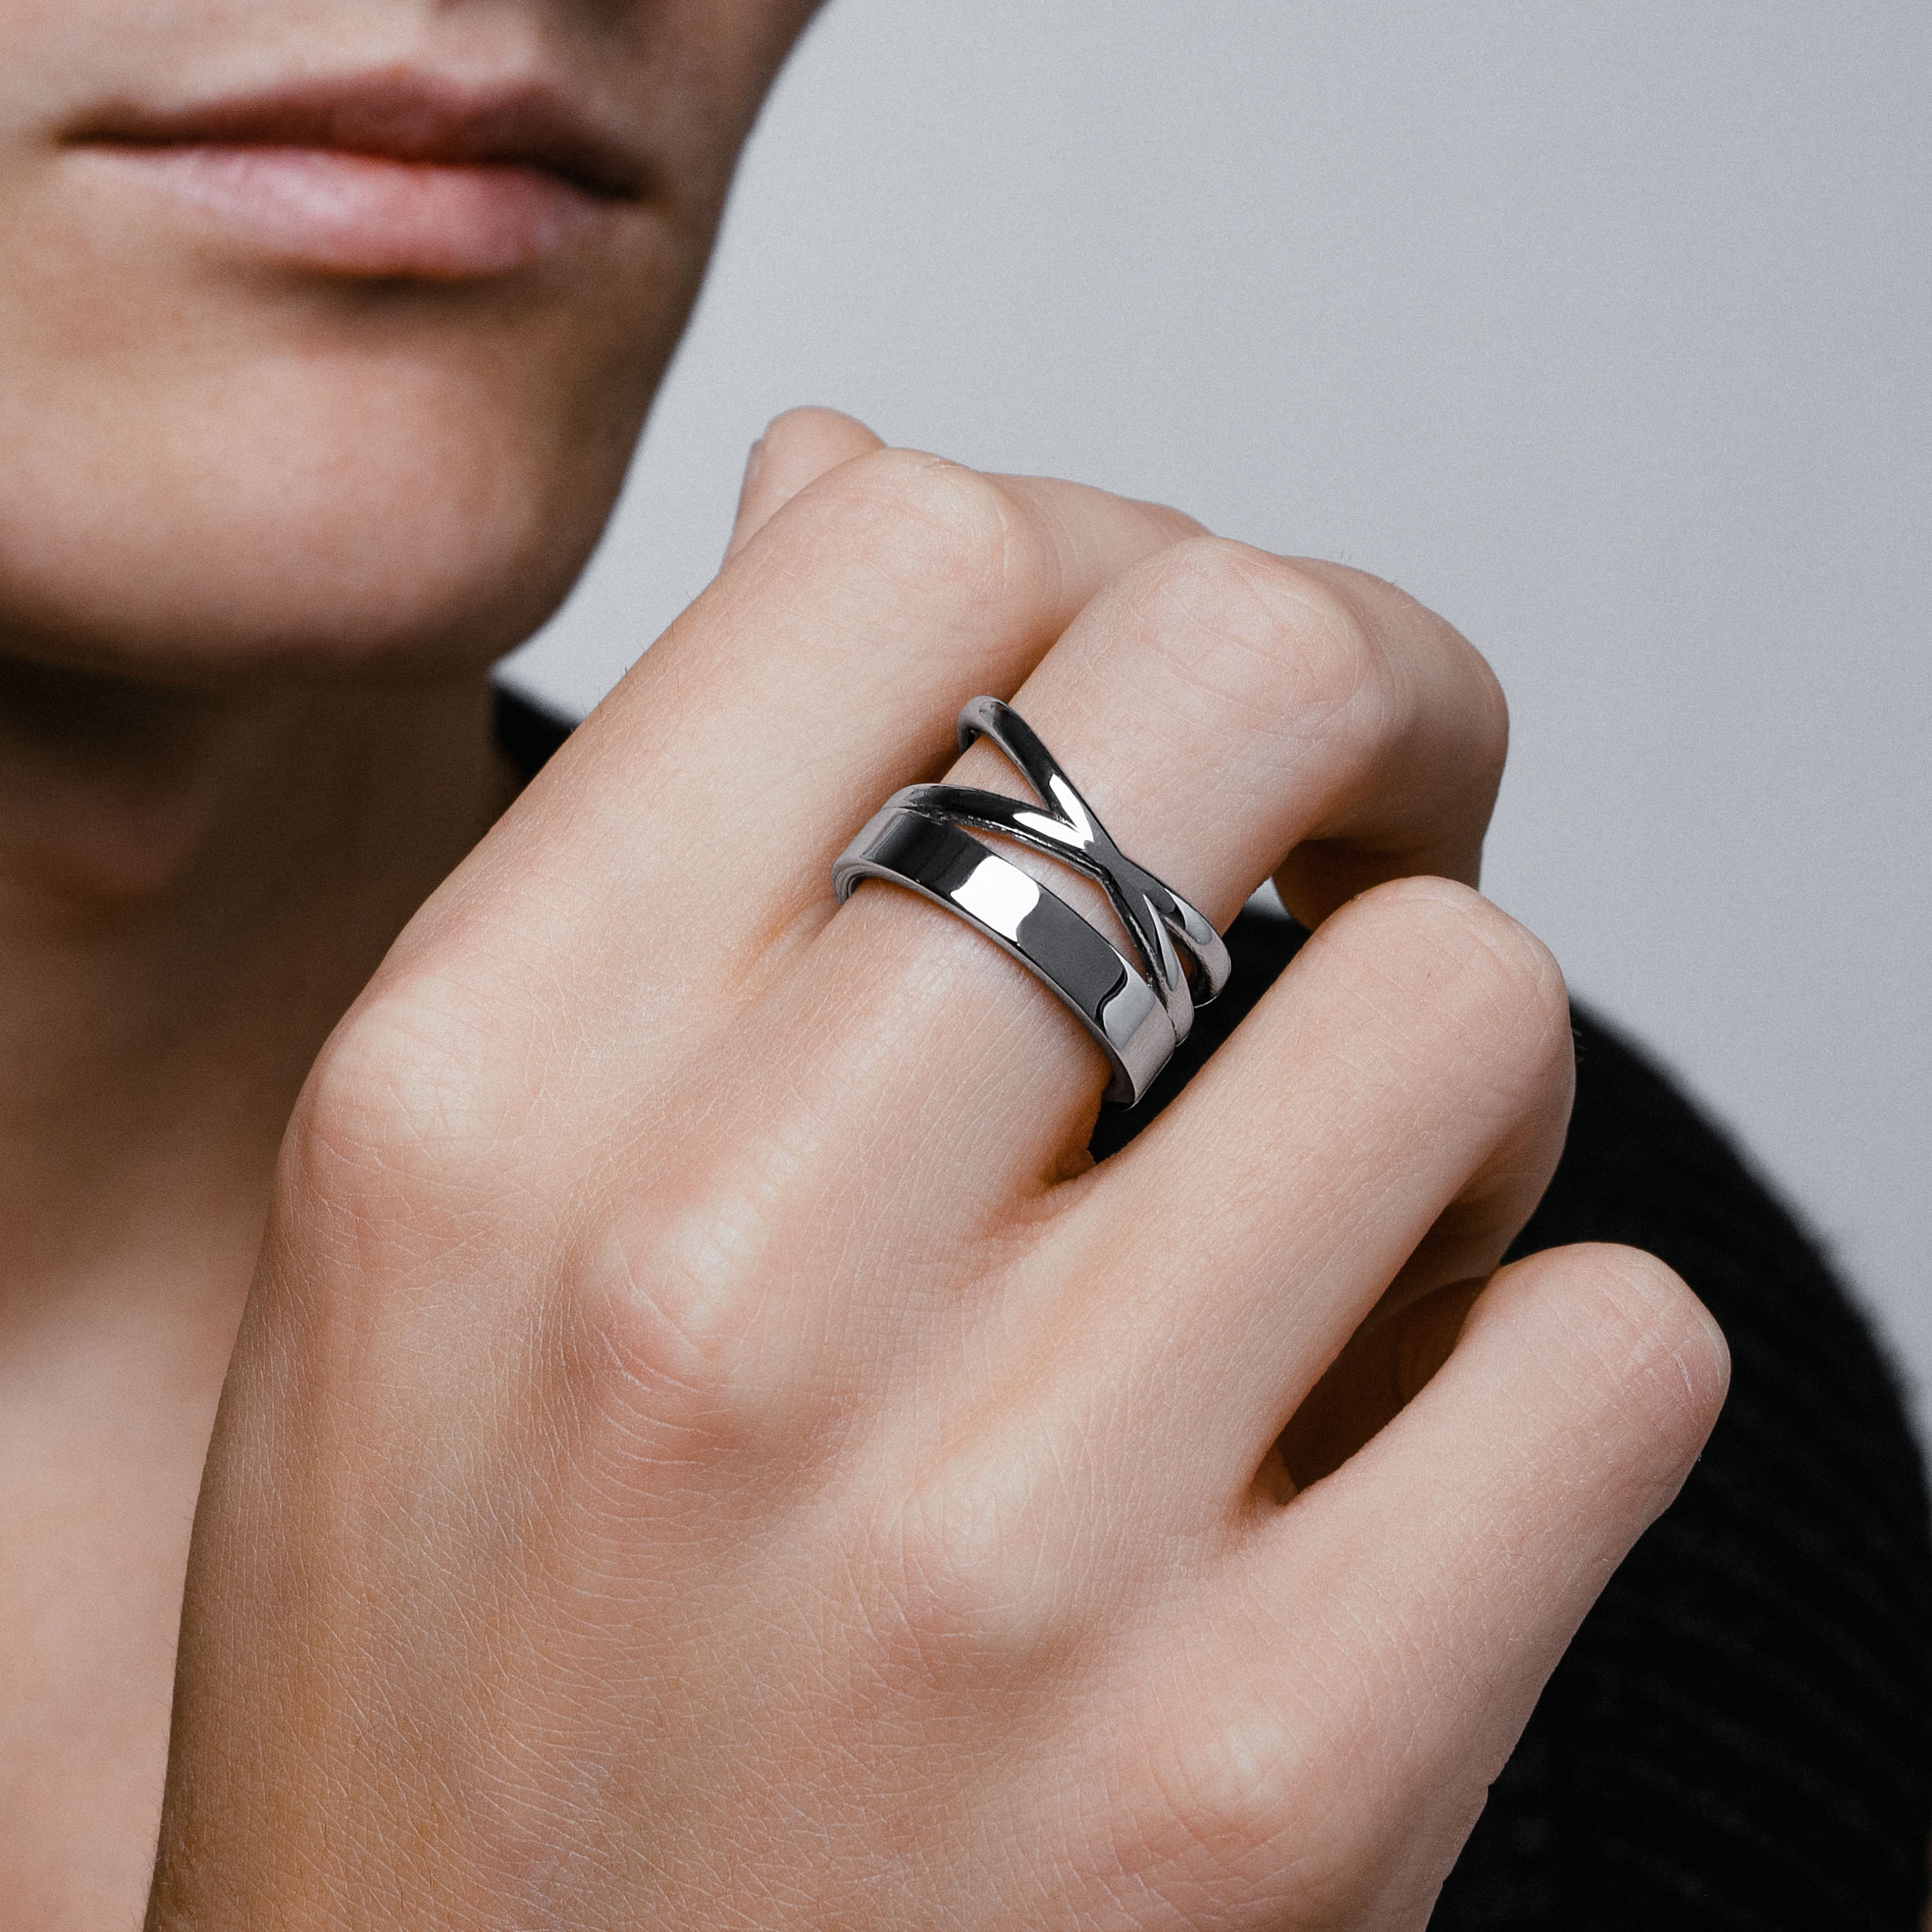 Rings - Zamasu Goku Black Time Ring Rings Finger Ring Adjustable Ring For  Men Women Jewelry Gifts Cosplay (B) price in Saudi Arabia | Amazon Saudi  Arabia | kanbkam